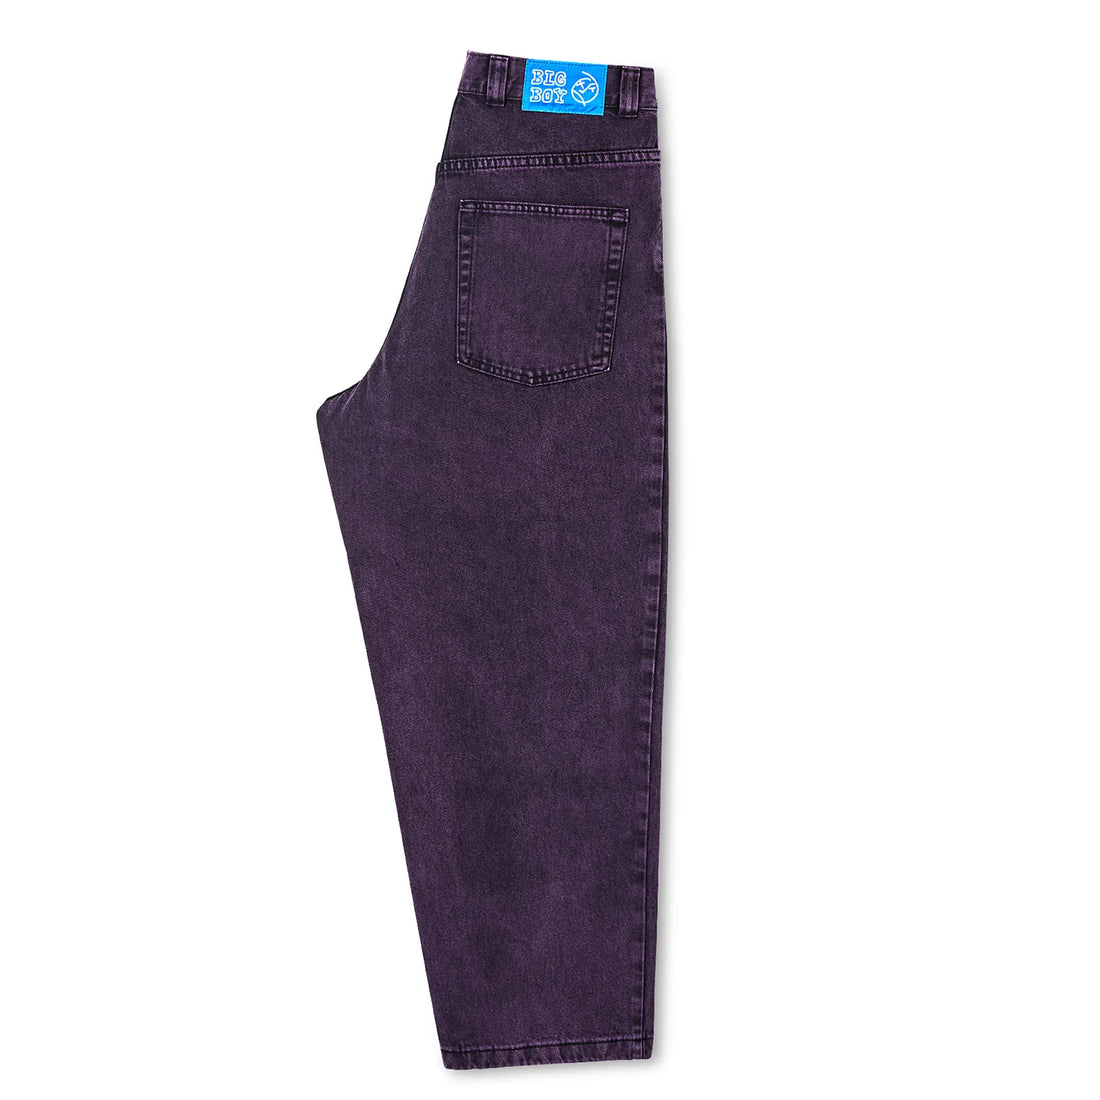 Polar Skate Co. Big Boy Jeans (Purple/Black)